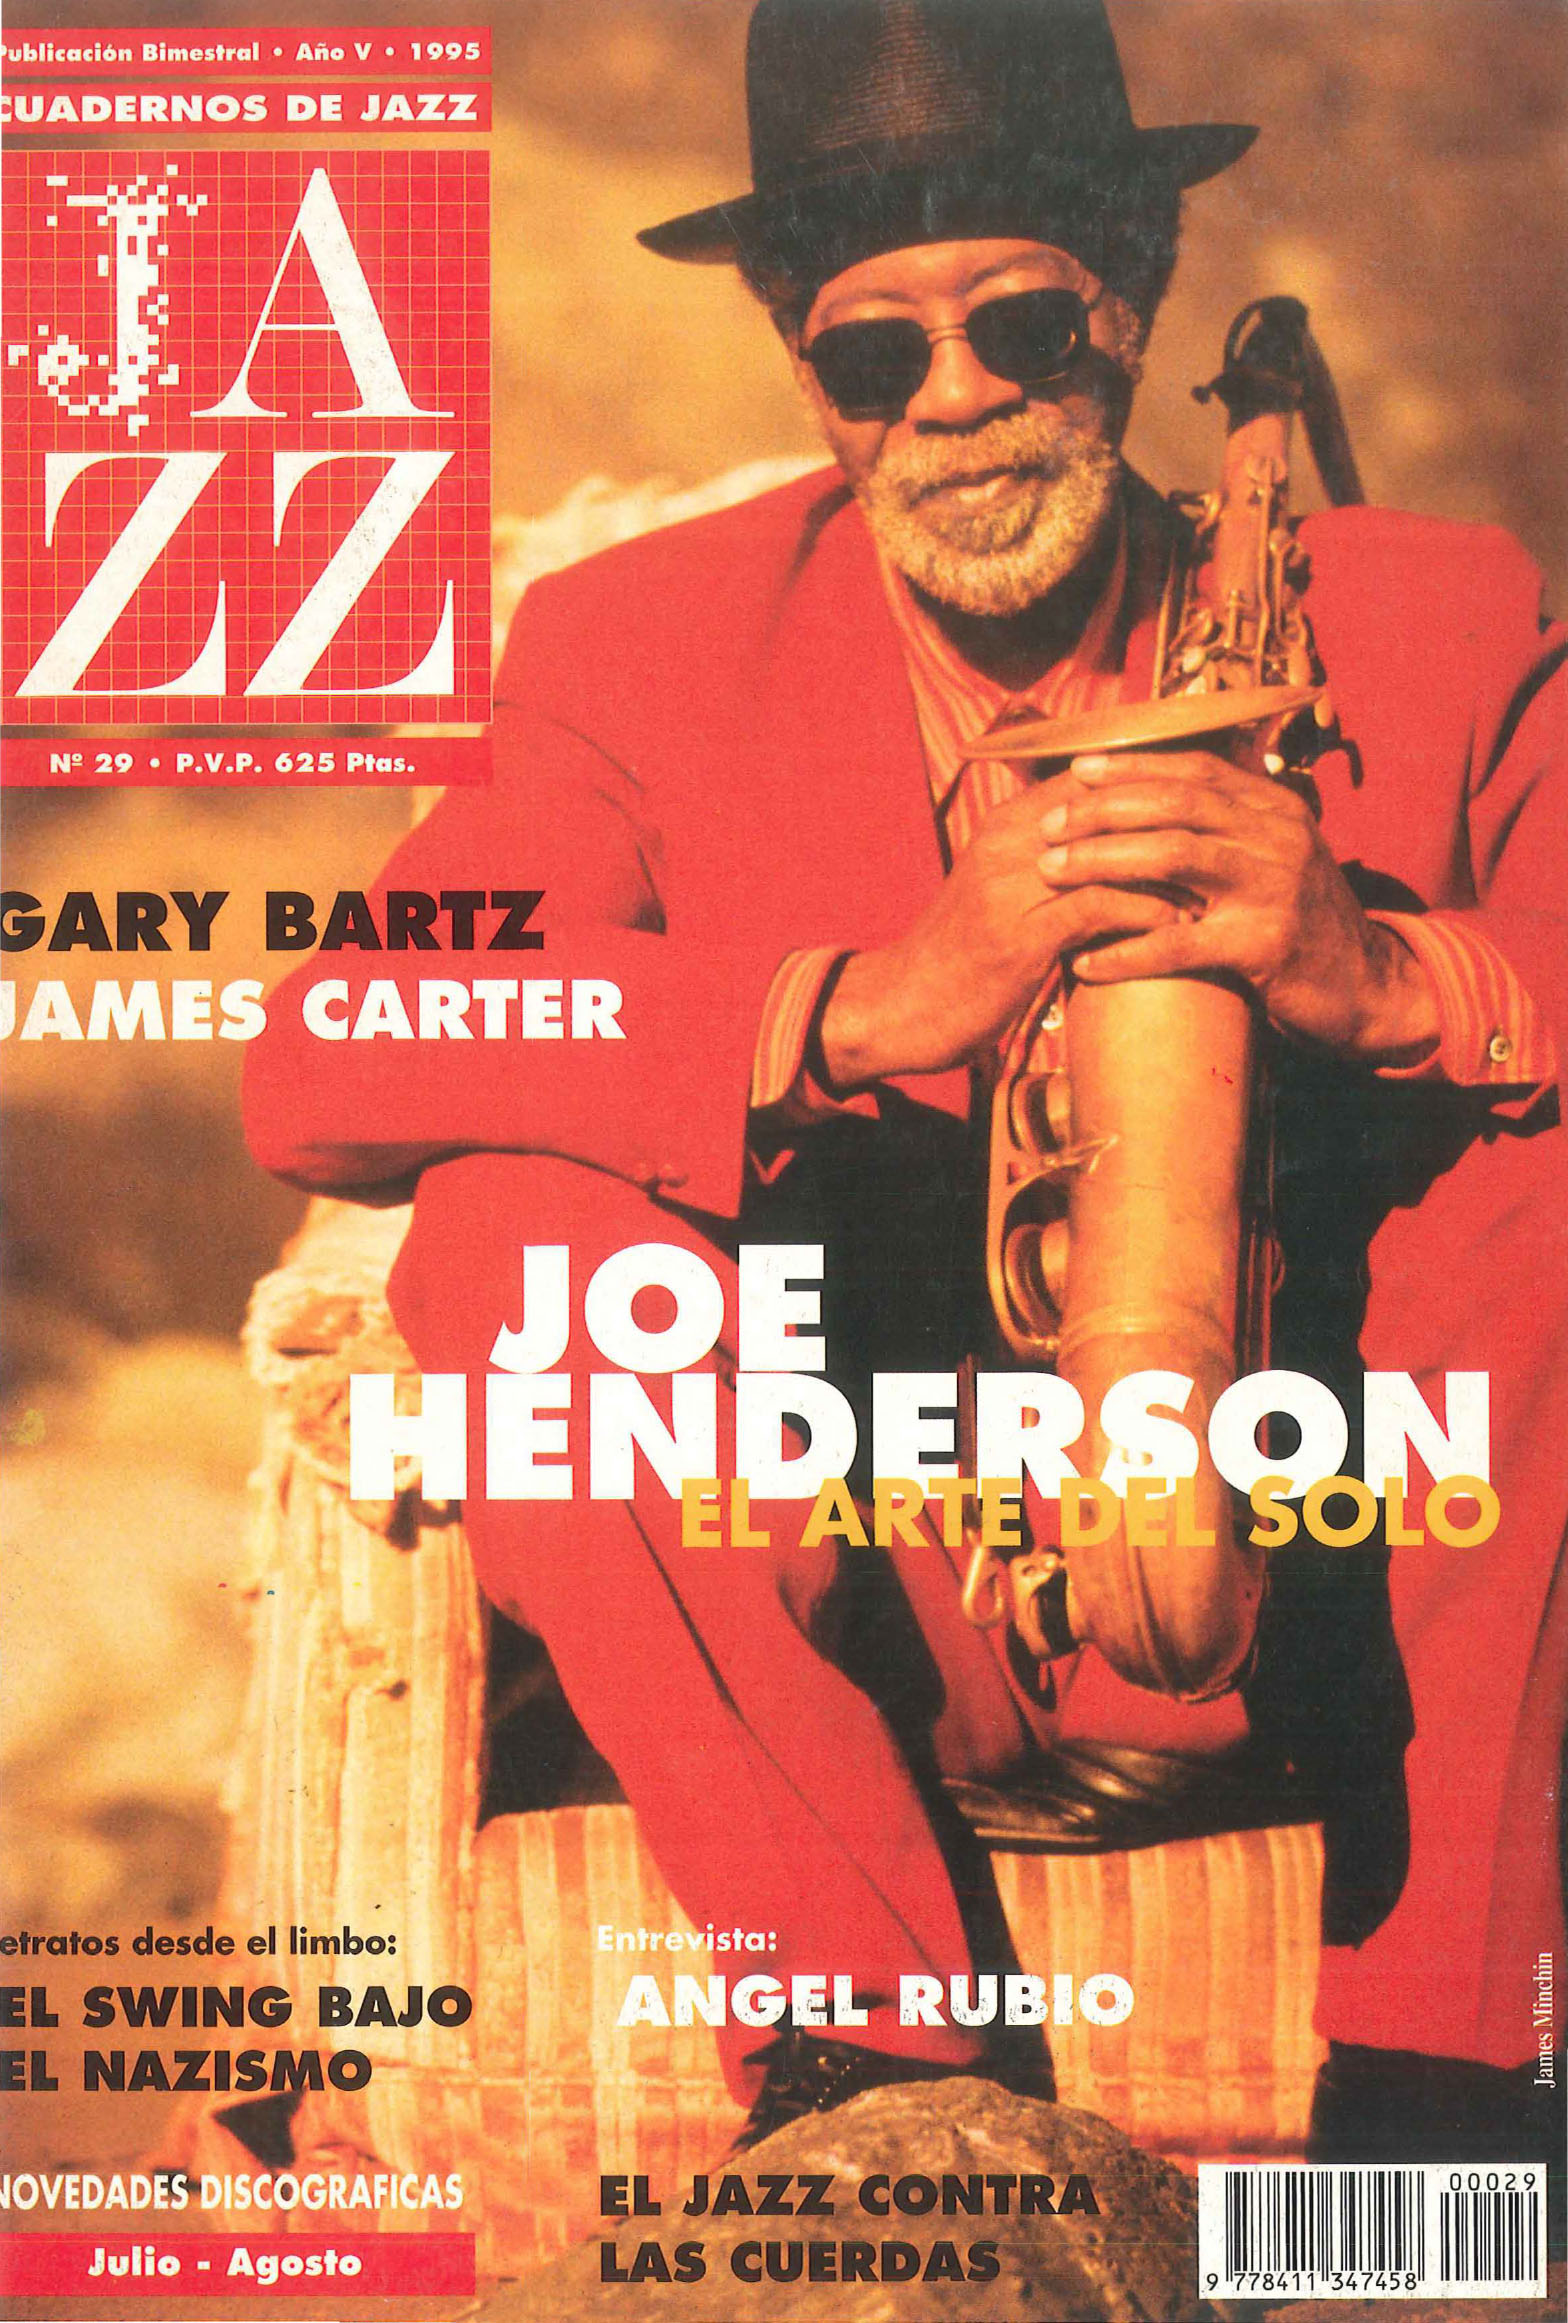 Cubierta del número 29 de la revista Cuadernos de Jazz